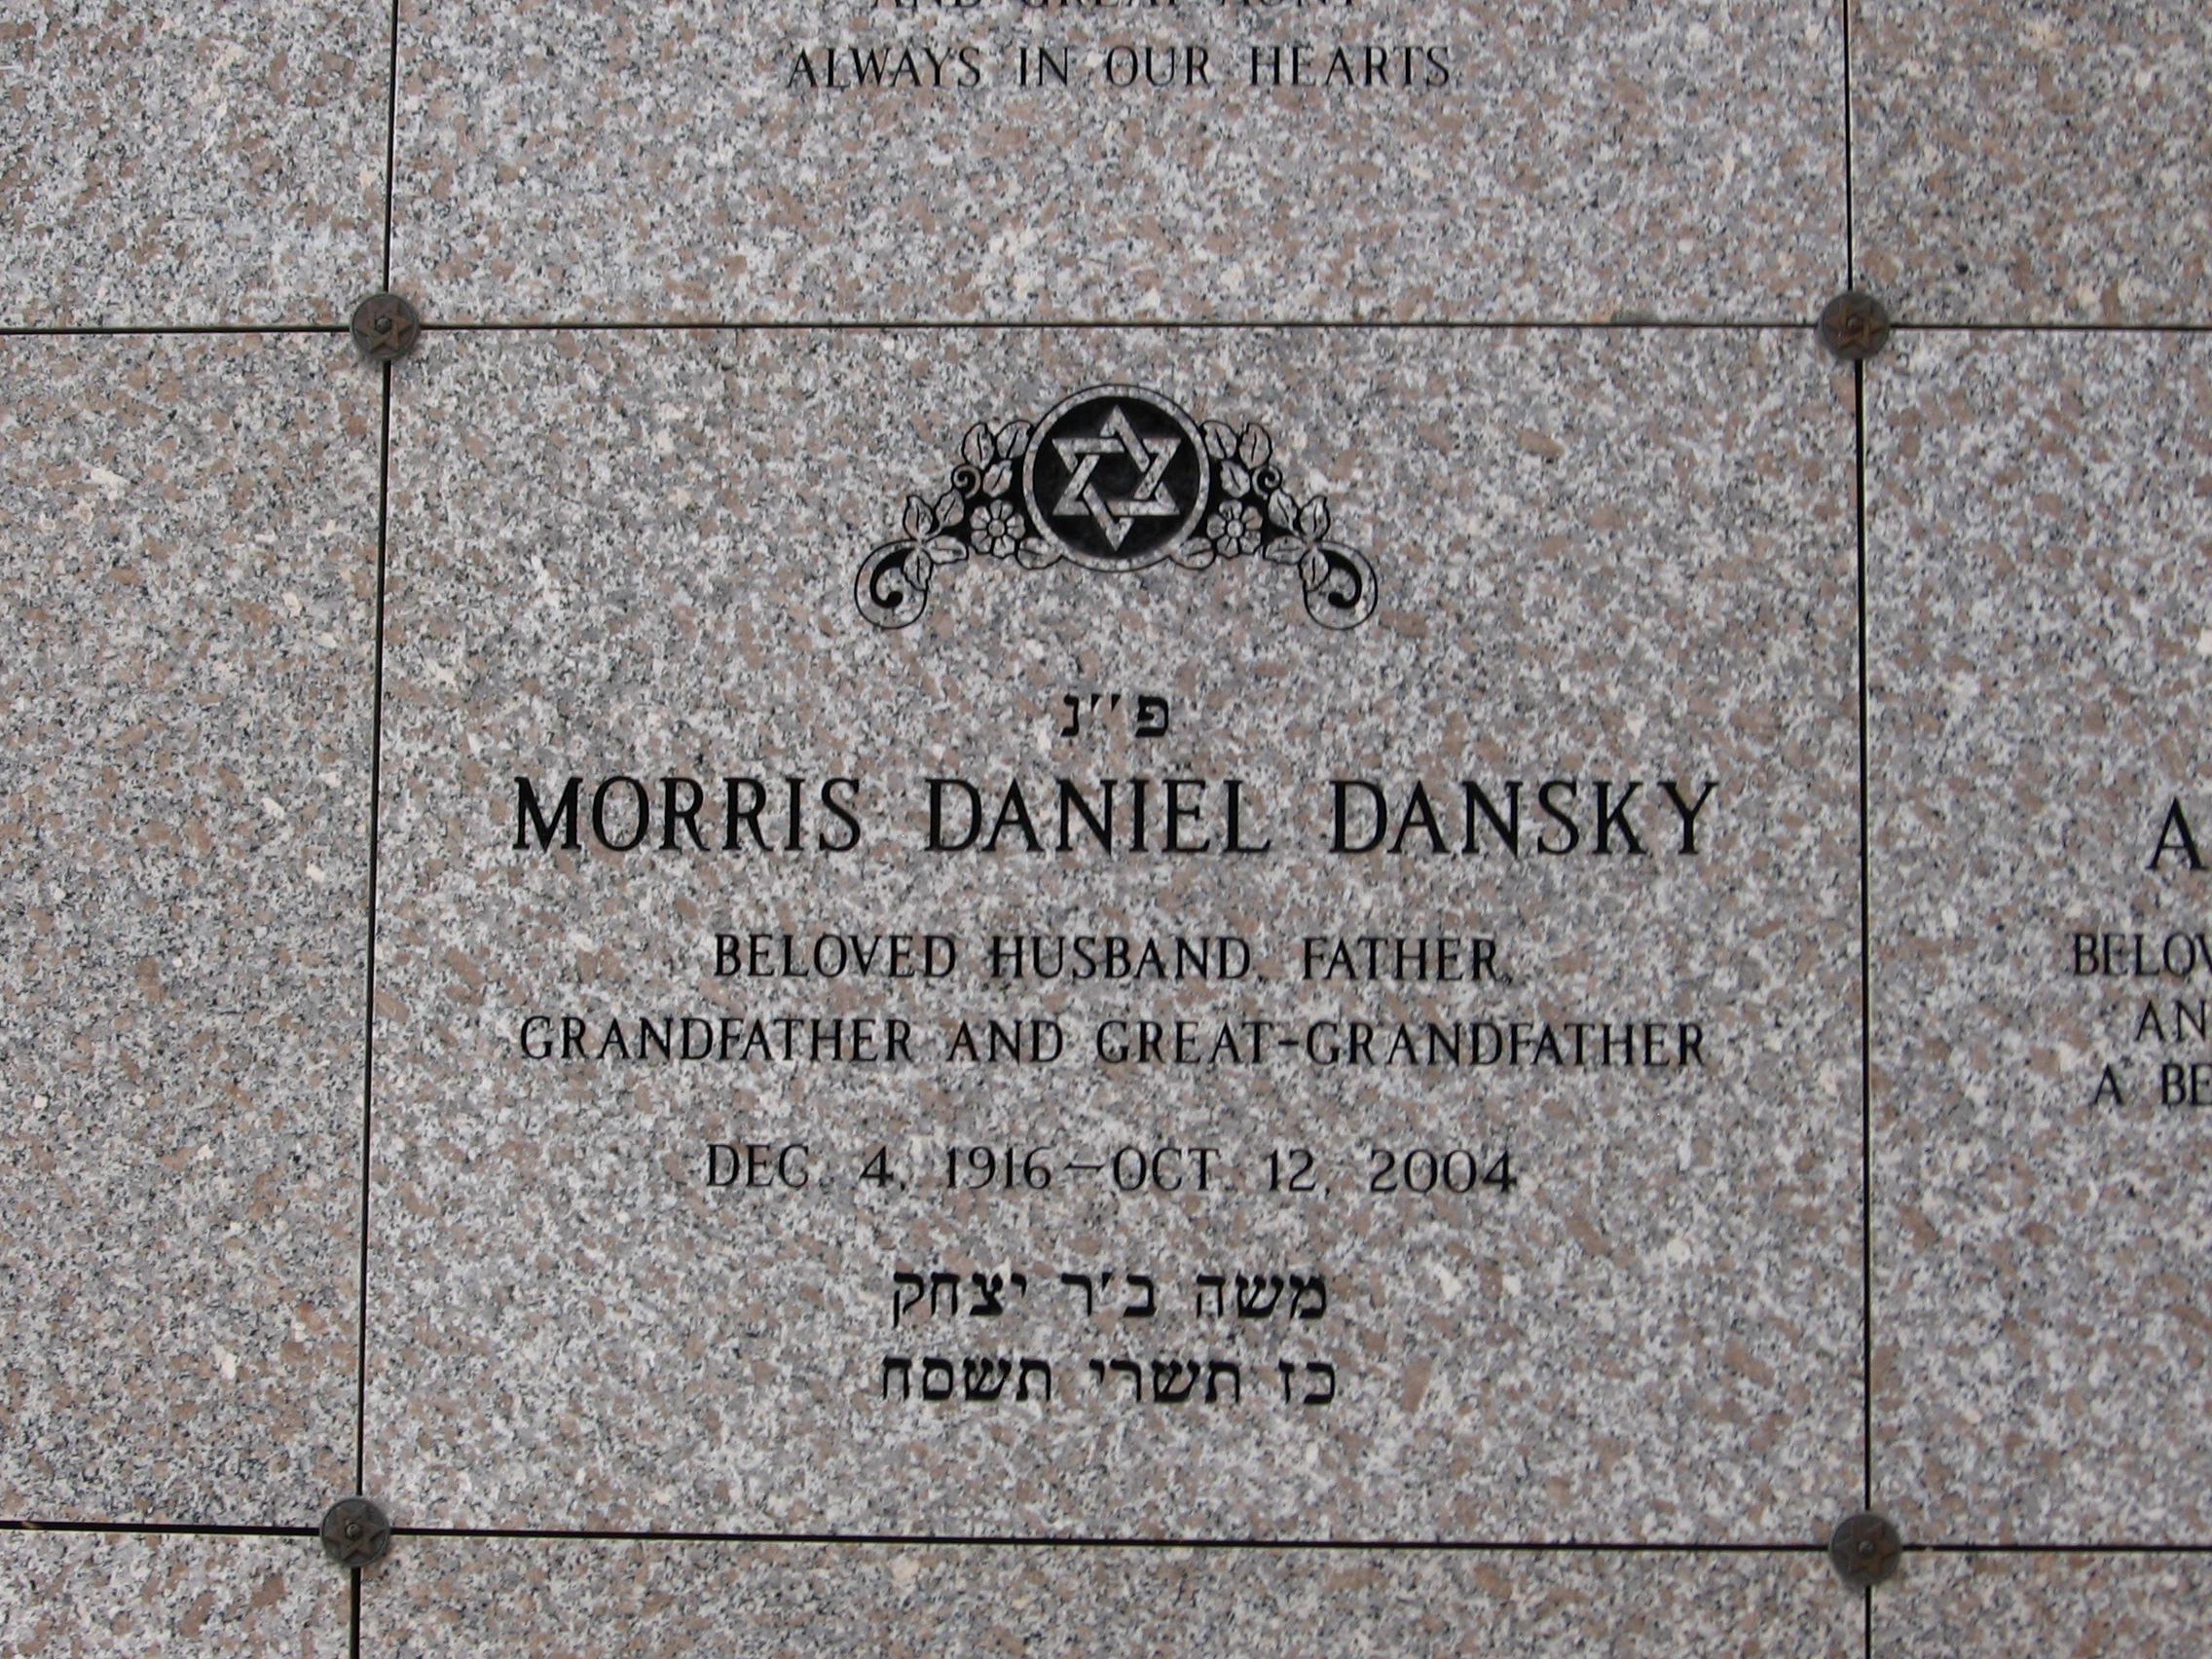 Morris Daniel Dansky